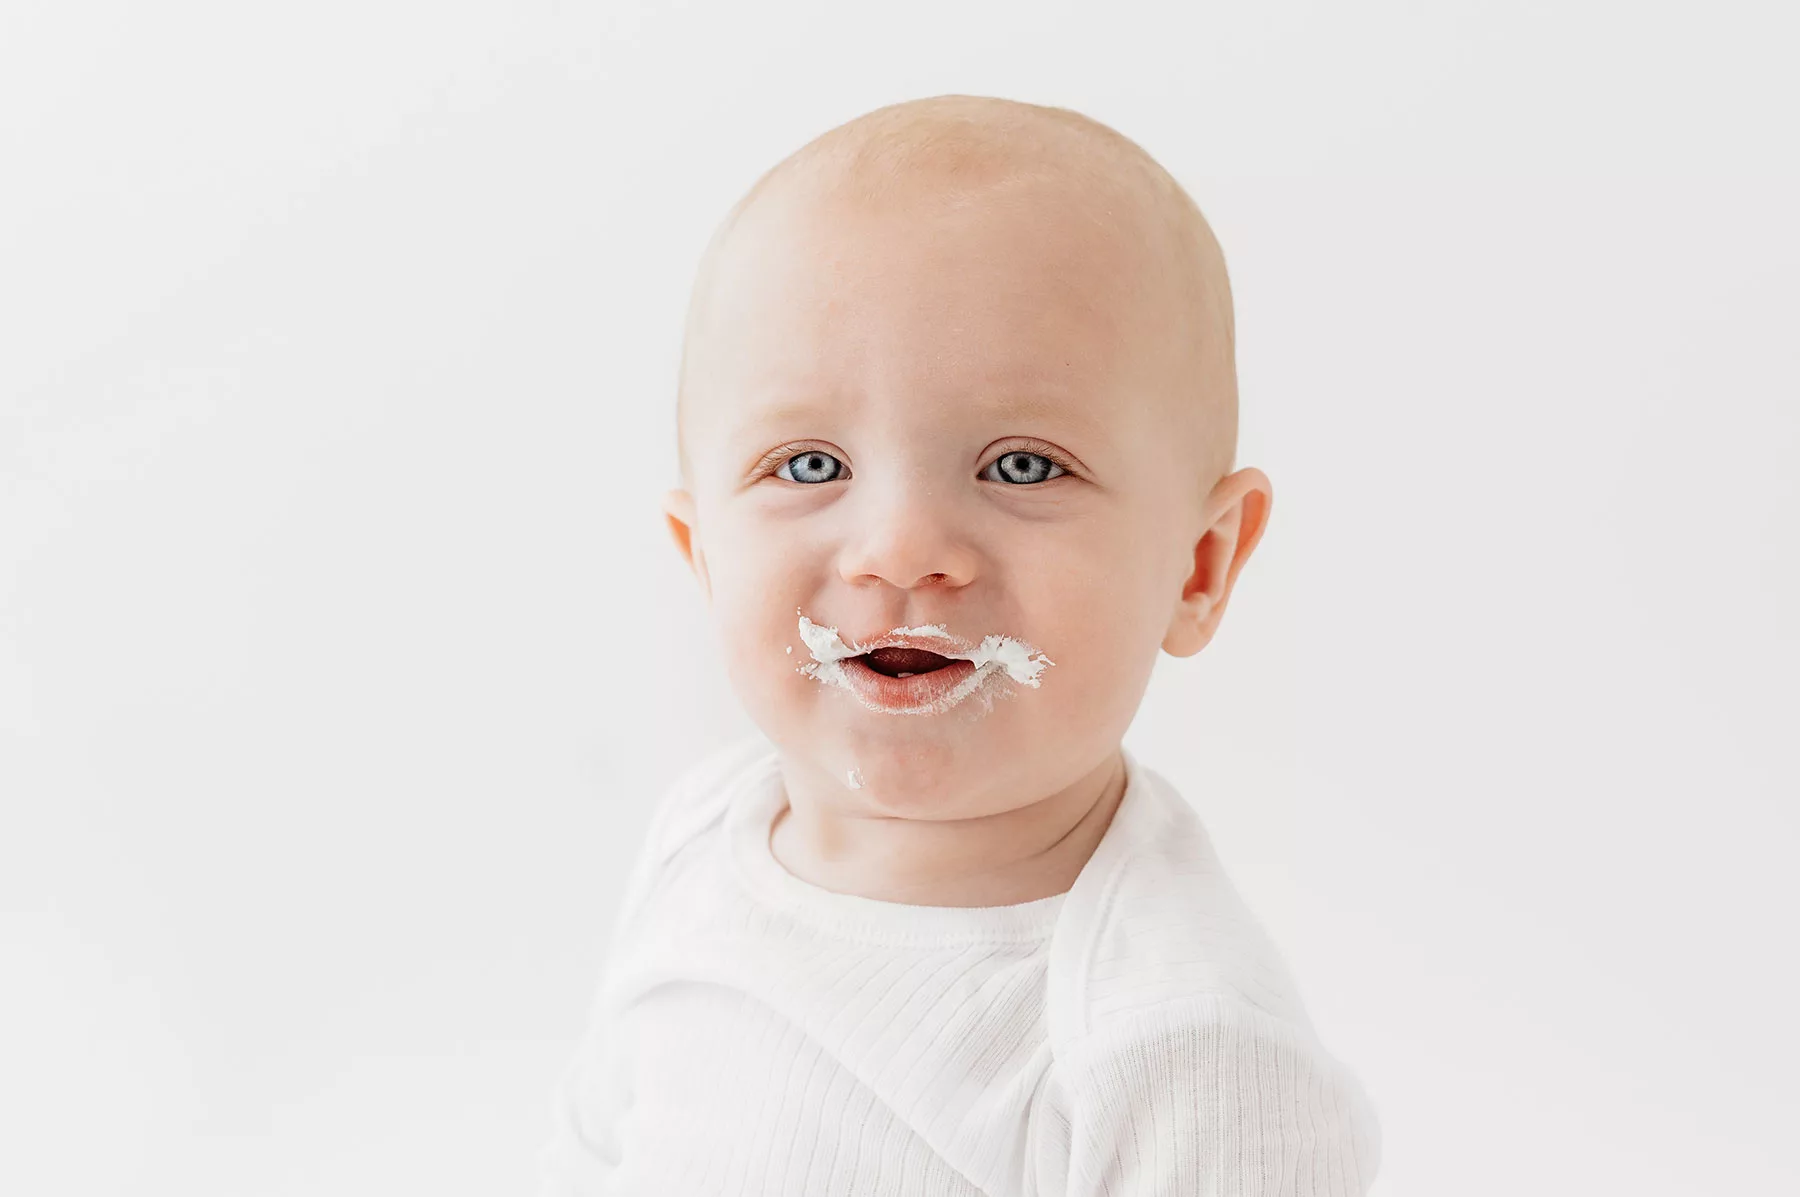 Baby boy cake smash photoshoot- big blue eyes with white romper